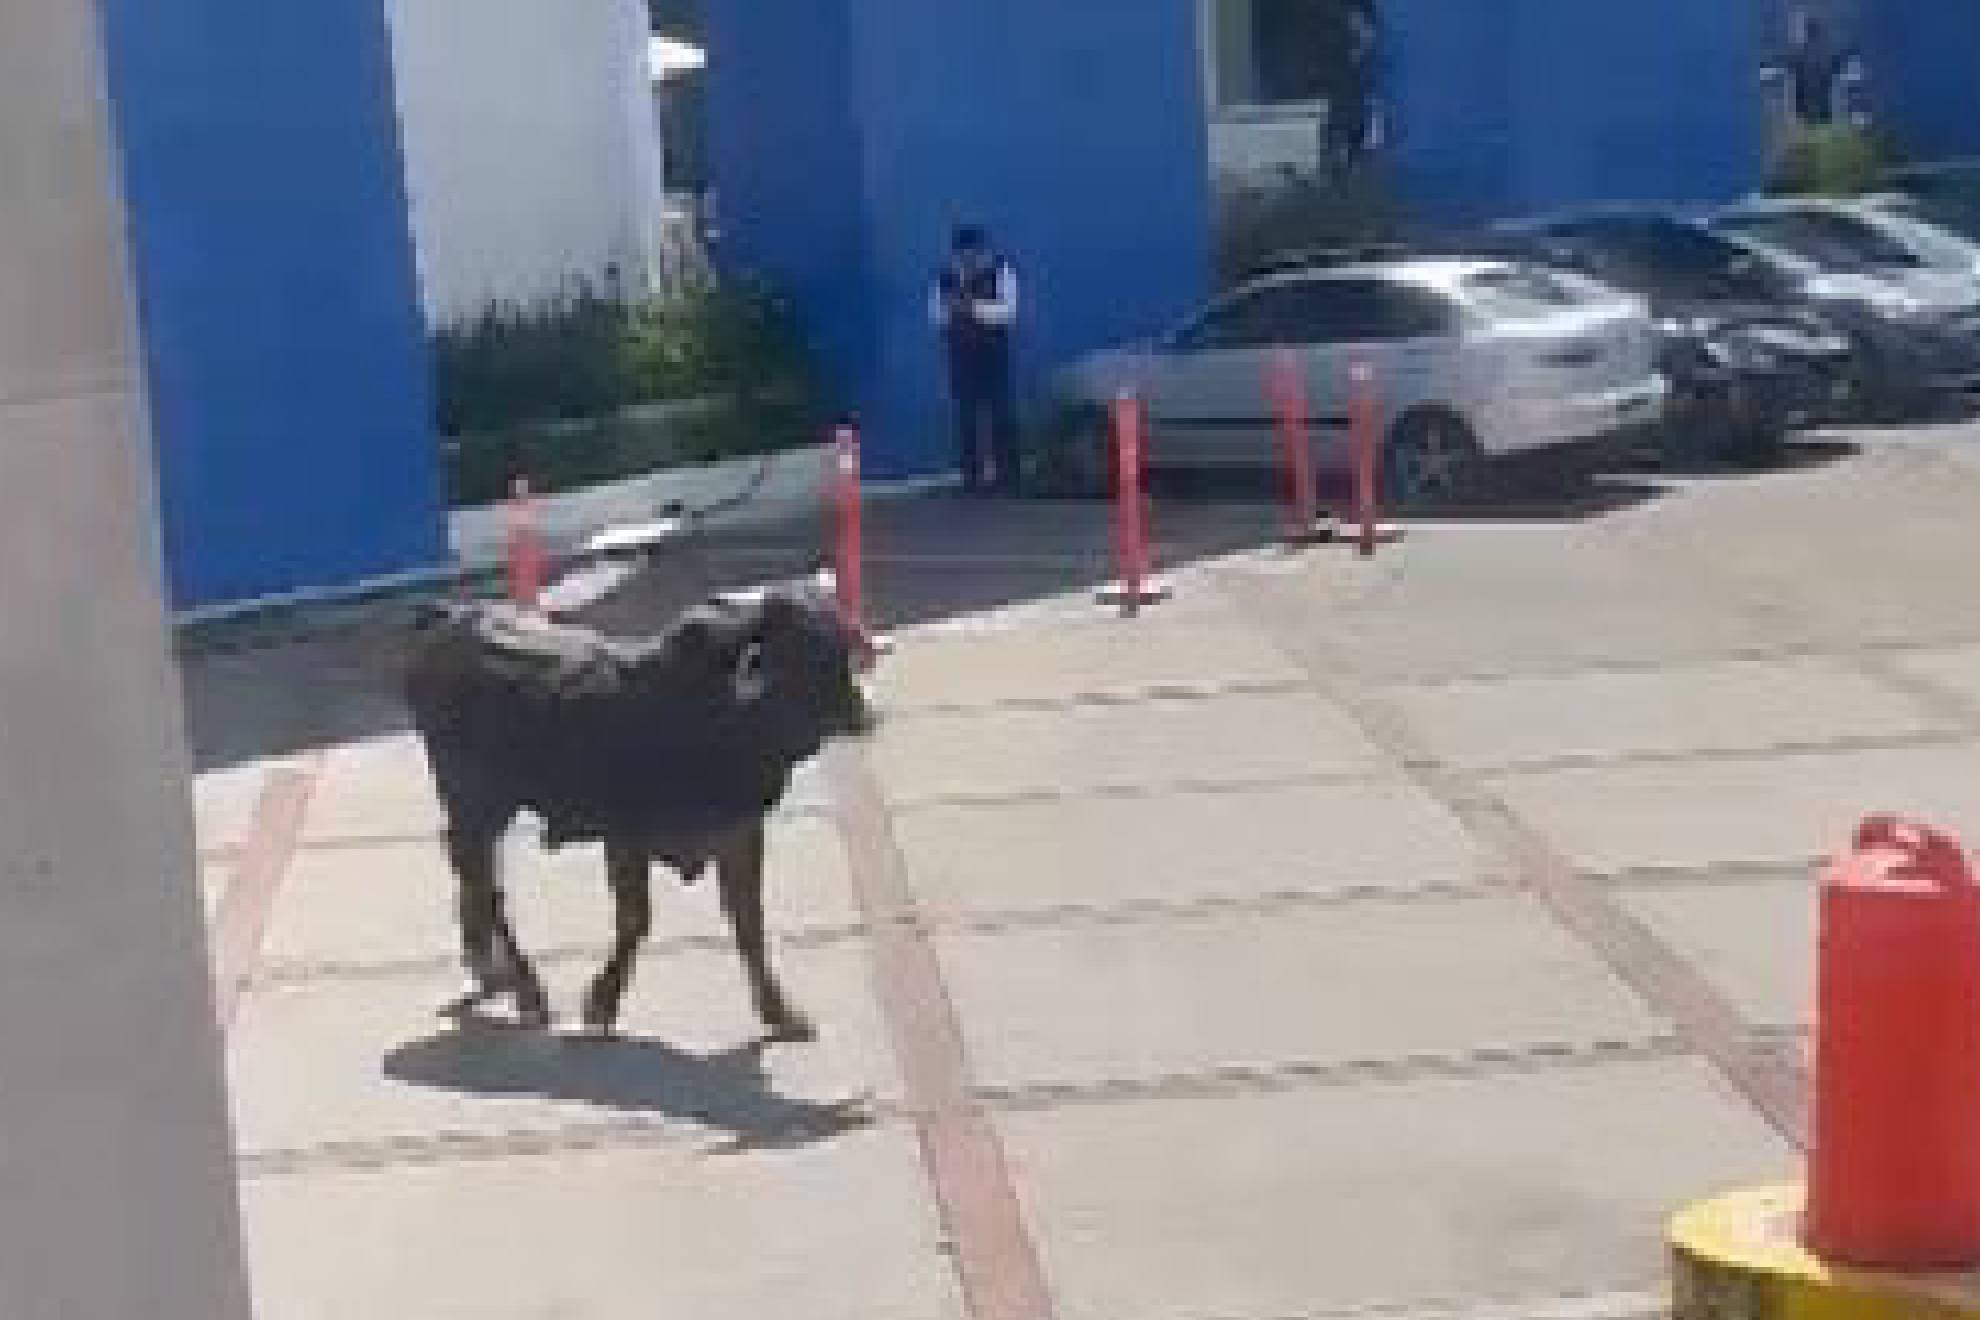 El toro lleg hasta el plantel de la Universidad La Salle, campus Pedregal